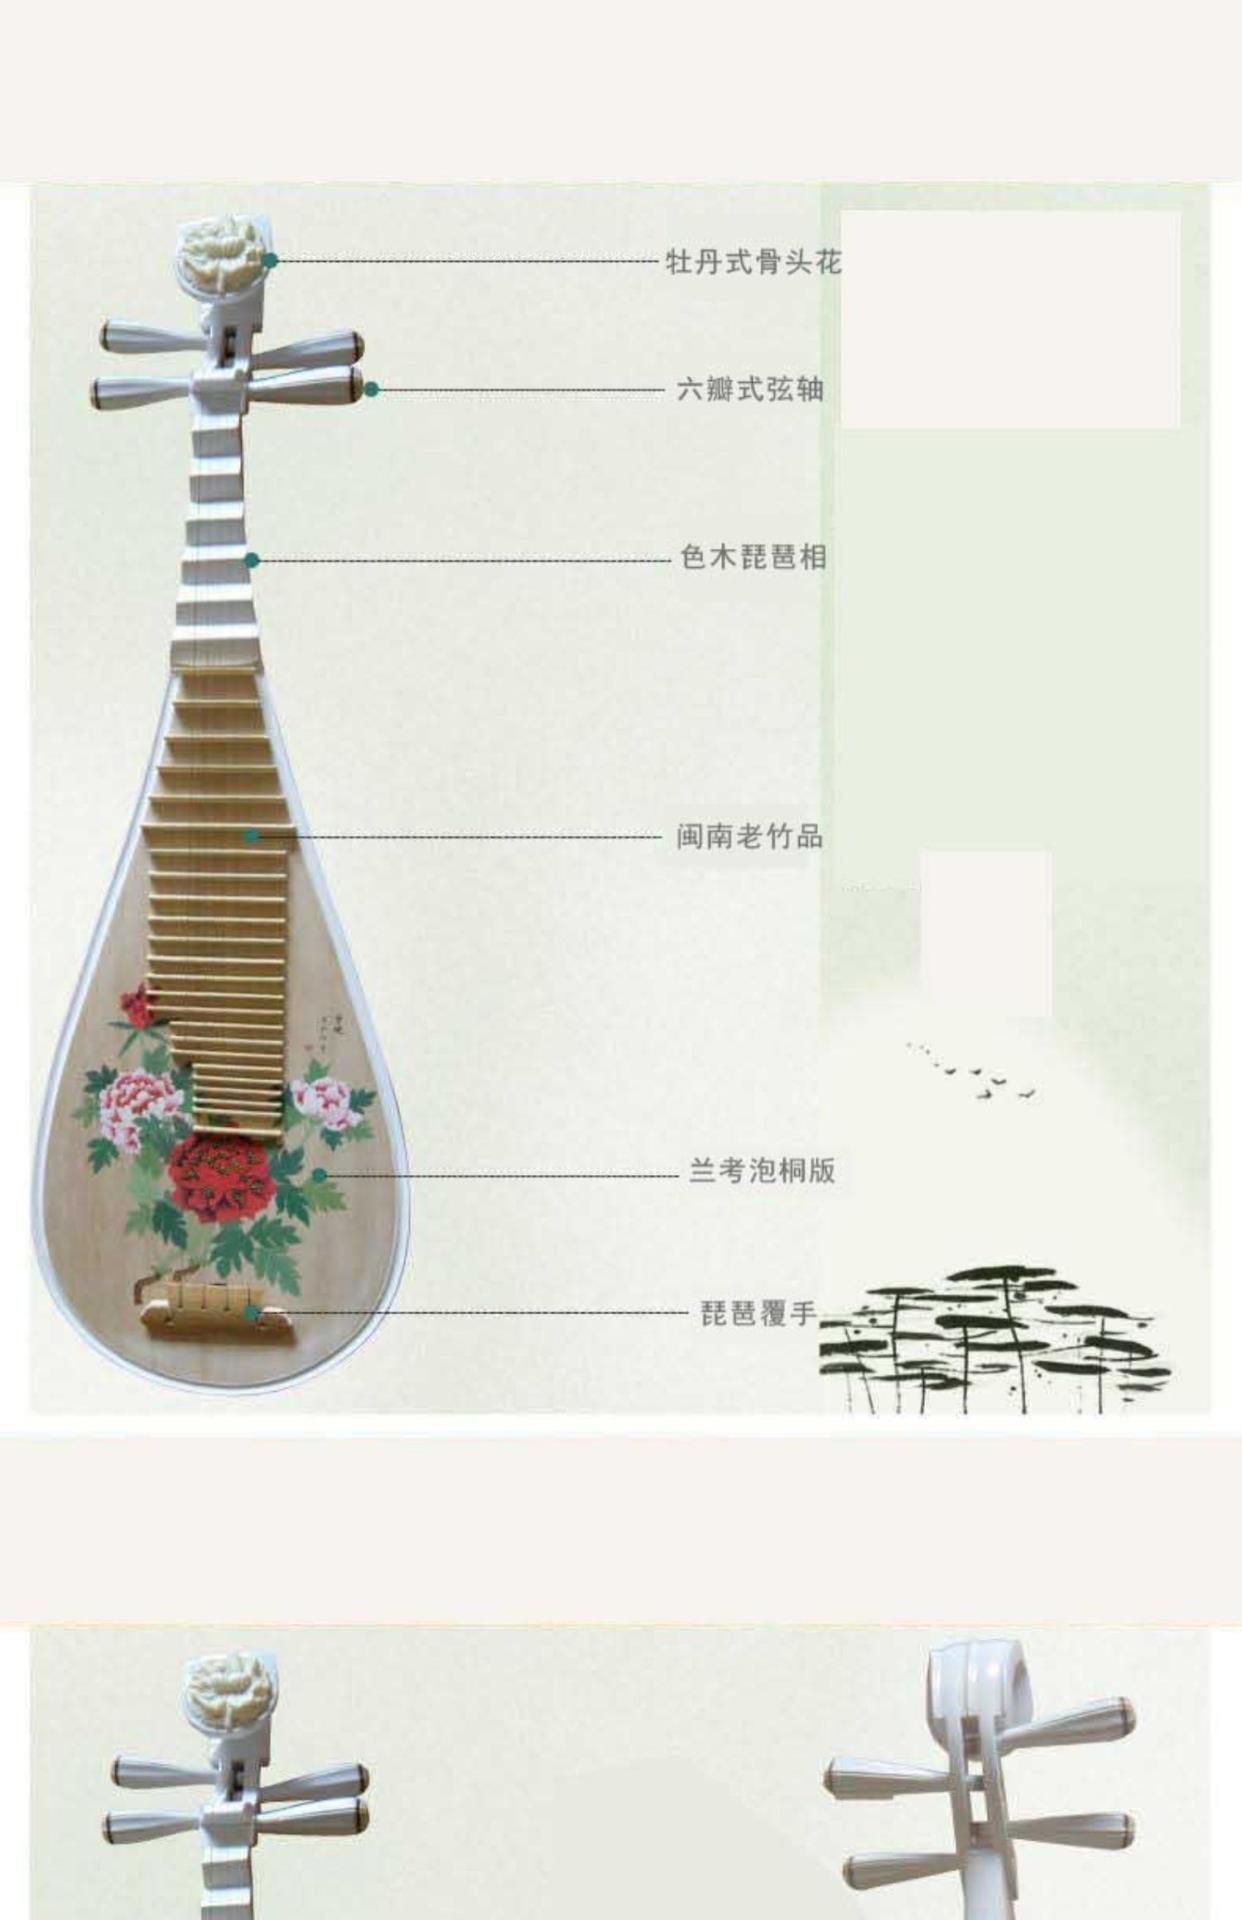 Kỹ thuật thủ công sáng tạo Jiangyin sơn tùy chỉnh bằng gỗ hồng sắc gỗ gụ trắng dụng cụ pipa thực hành cho người mới bắt đầu biểu diễn giao hàng cho người lớn - Nhạc cụ dân tộc